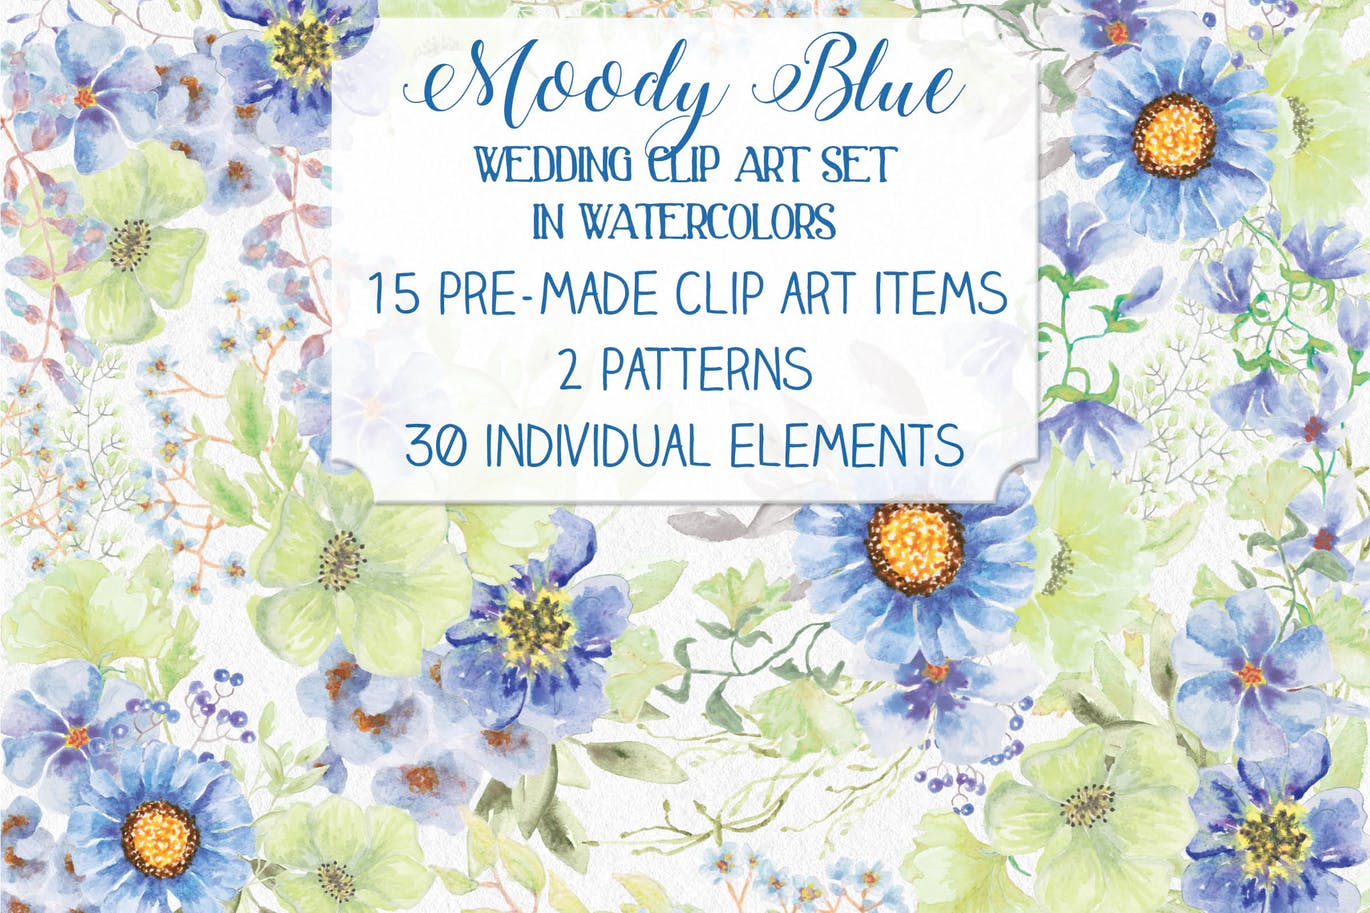 忧郁蓝水彩手绘花卉第一素材精选设计素材 “Moody Blue” Watercolor Bundle插图